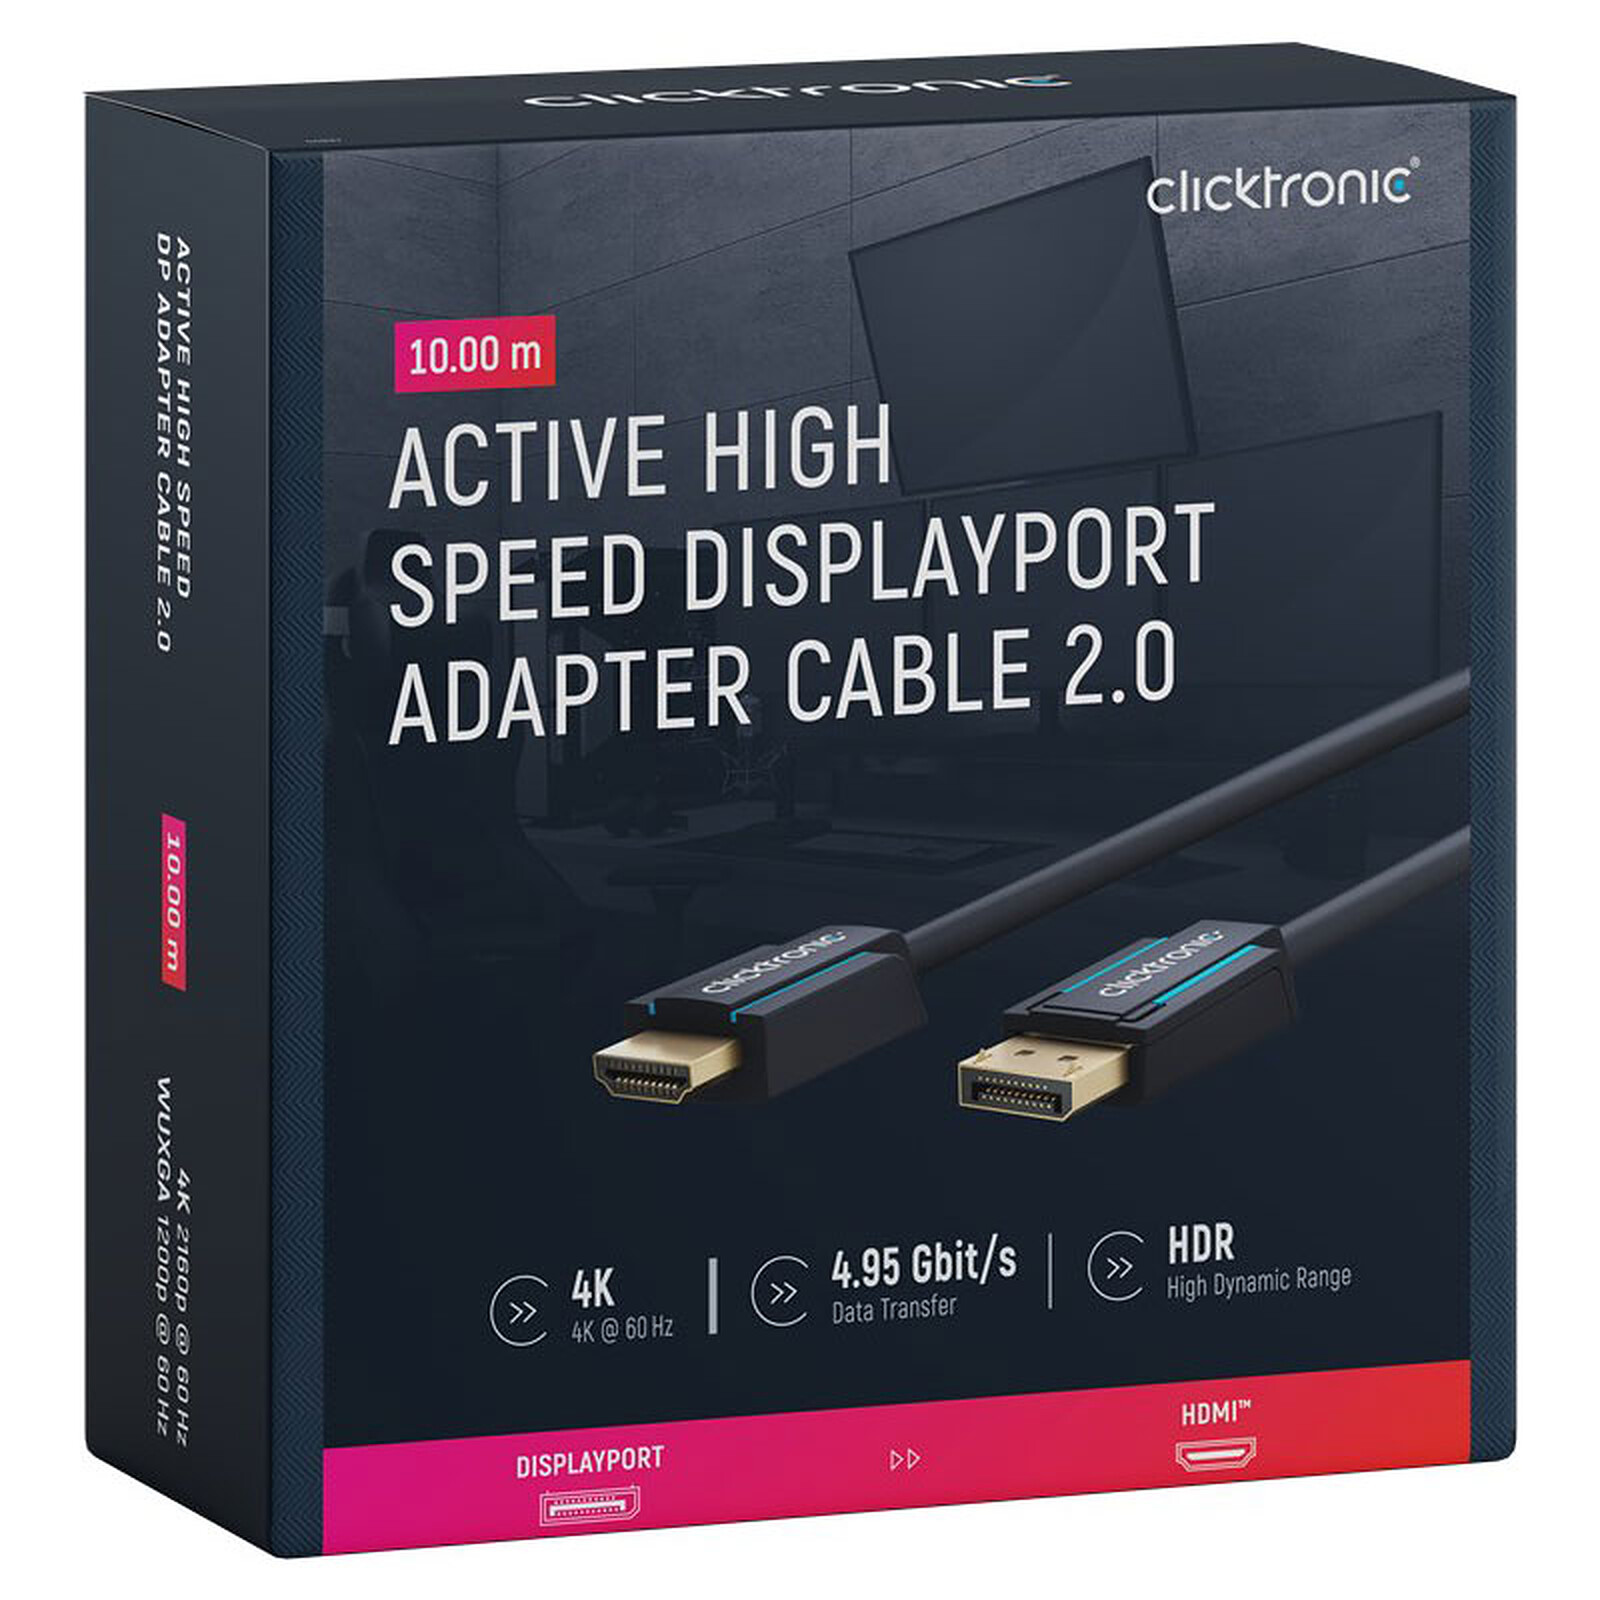 Câble HDMI 2.0 premium de 1 m (4K 60Hz) - Câbles et adaptateurs DVI/HDMI